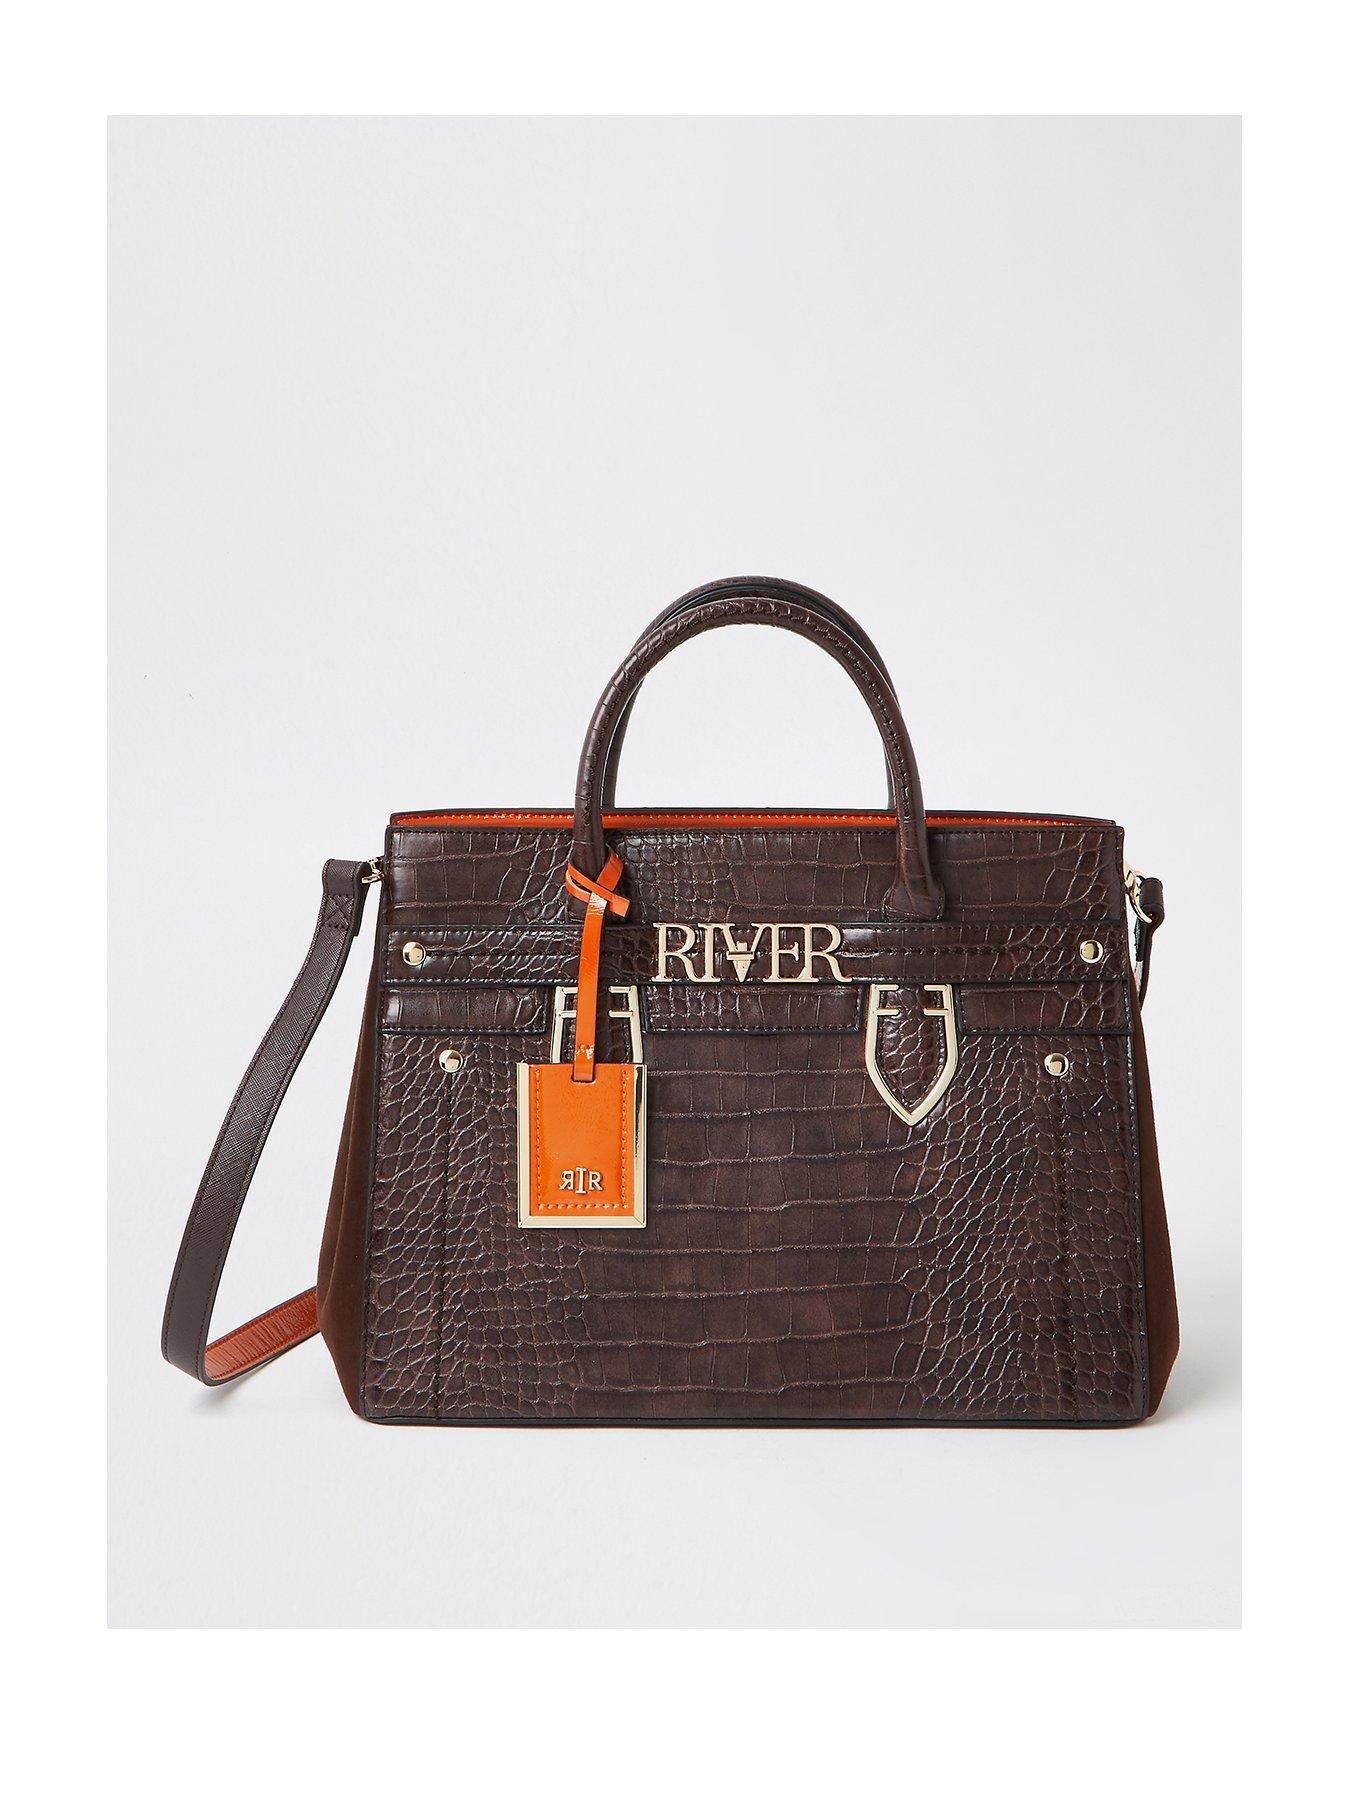 river island croc bag